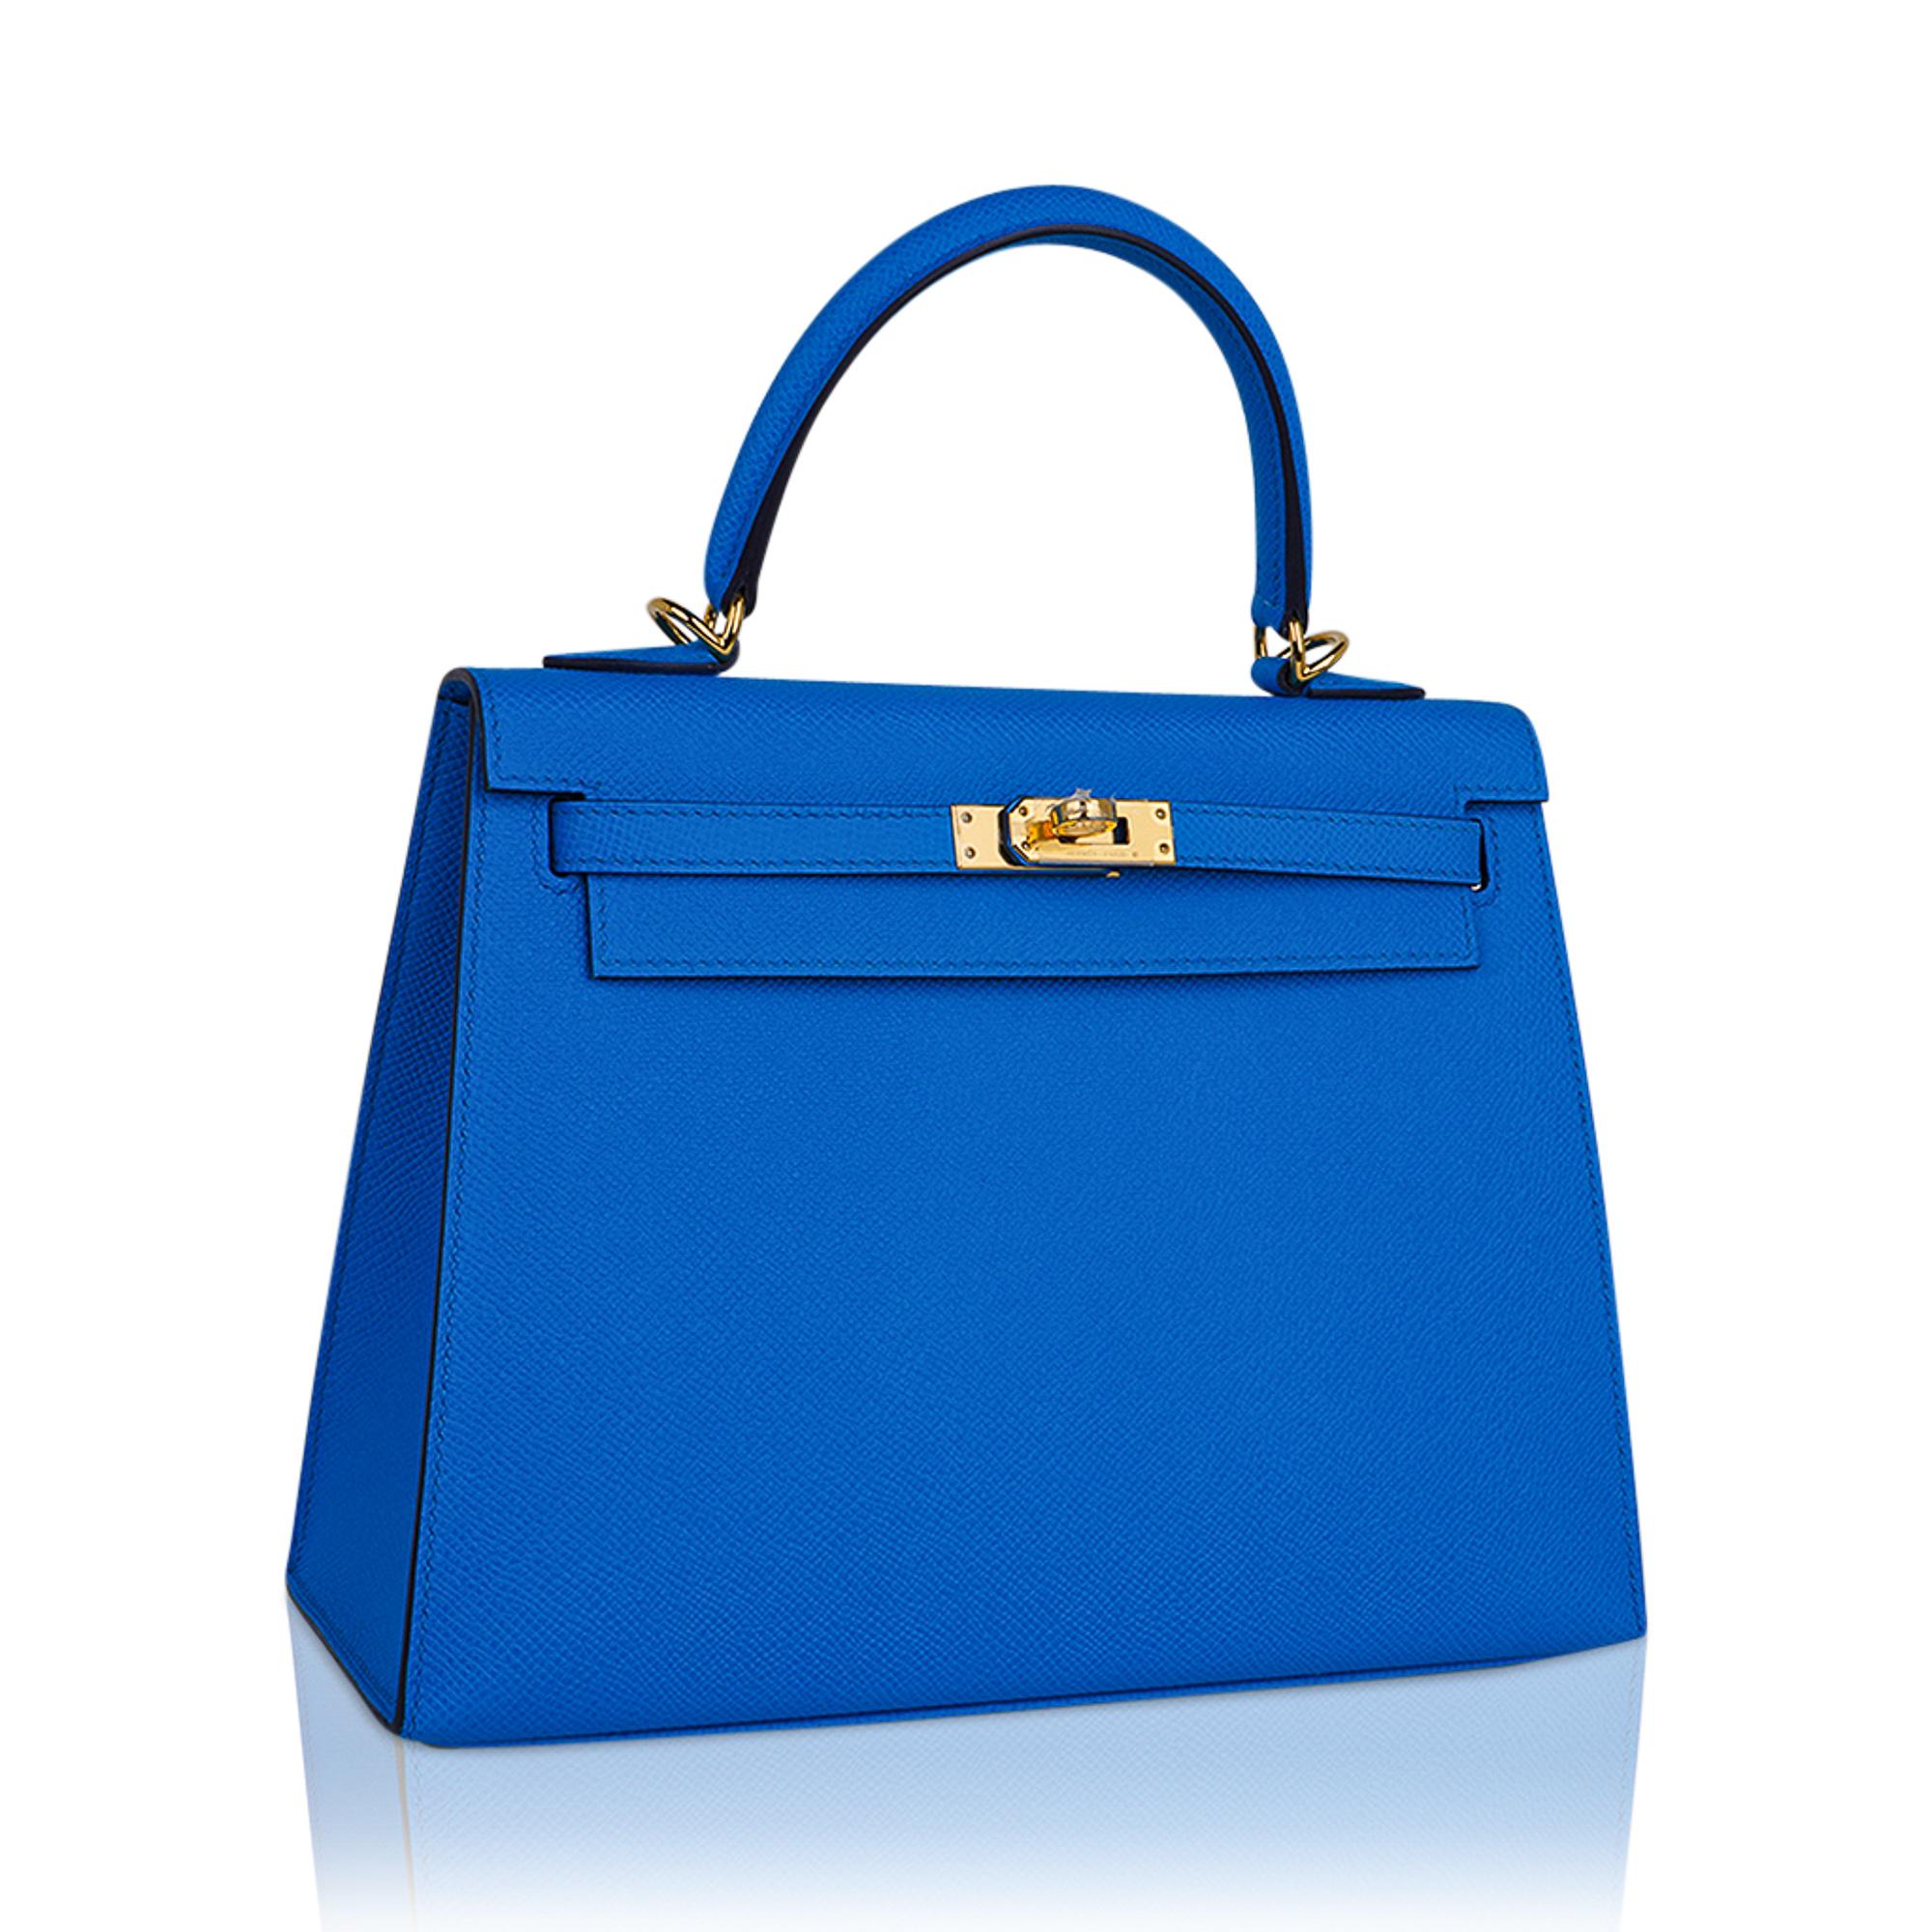 Mightychic bietet eine exquisite Hermes Kelly 25 Sellier Tasche in reich gesättigtem Bleu Frida an.
Diese exotische Farbe der Hermes Kelly Bag ist das ganze Jahr über eine schöne neutrale Farbe.
Akzentuiert mit goldener Hardware und